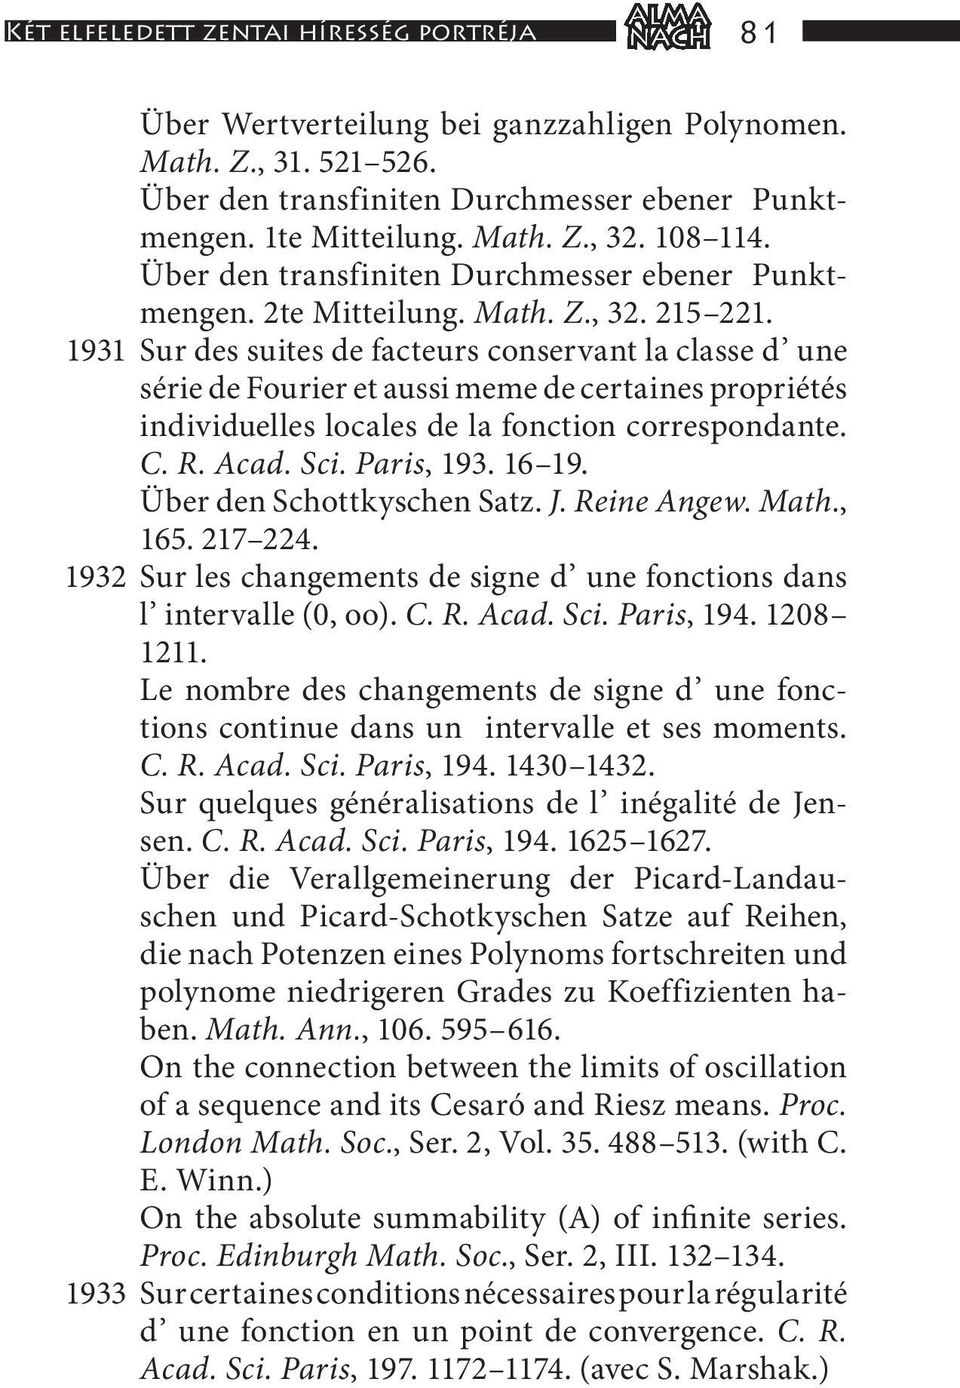 1931 Sur des suites de facteurs conservant la classe d une série de Fourier et aussi meme de certaines propriétés individuelles locales de la fonction correspondante. C. R. Acad. Sci. Paris, 193.